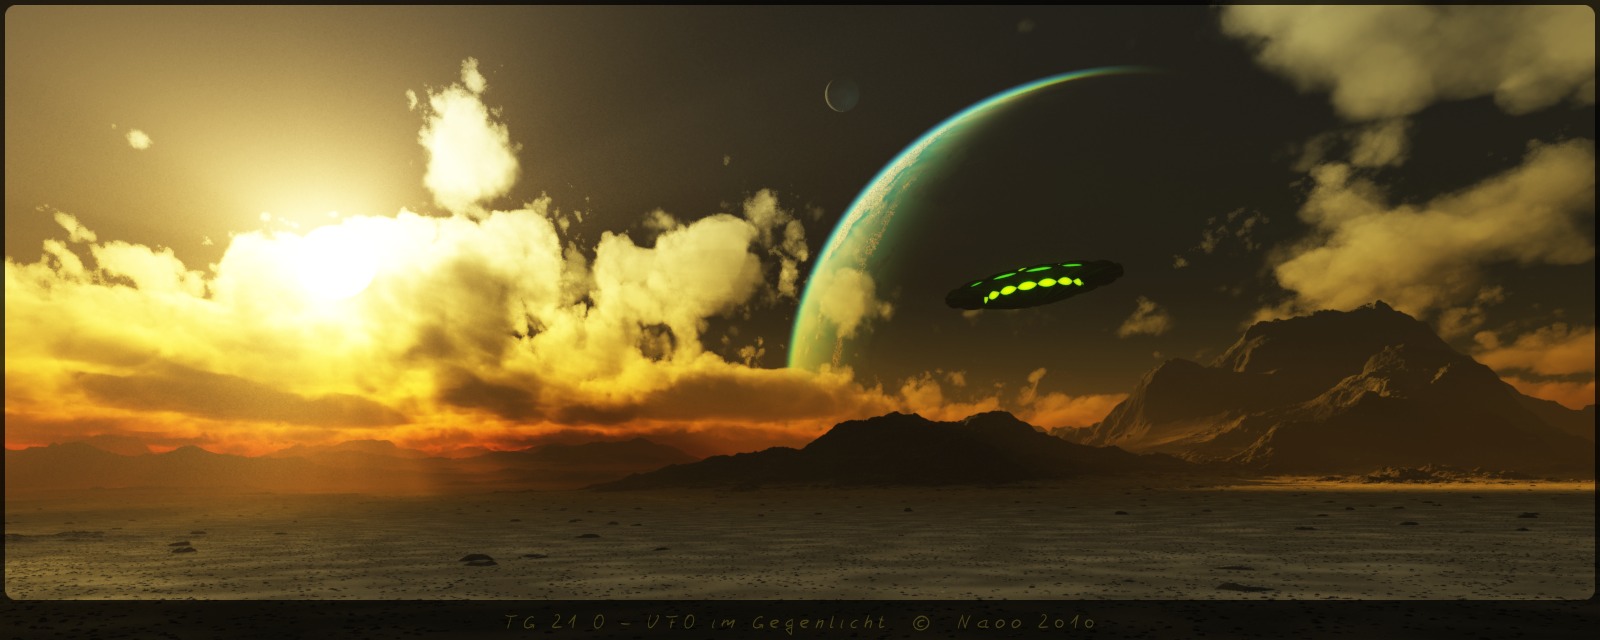 TG21O-UFOimGegenlicht